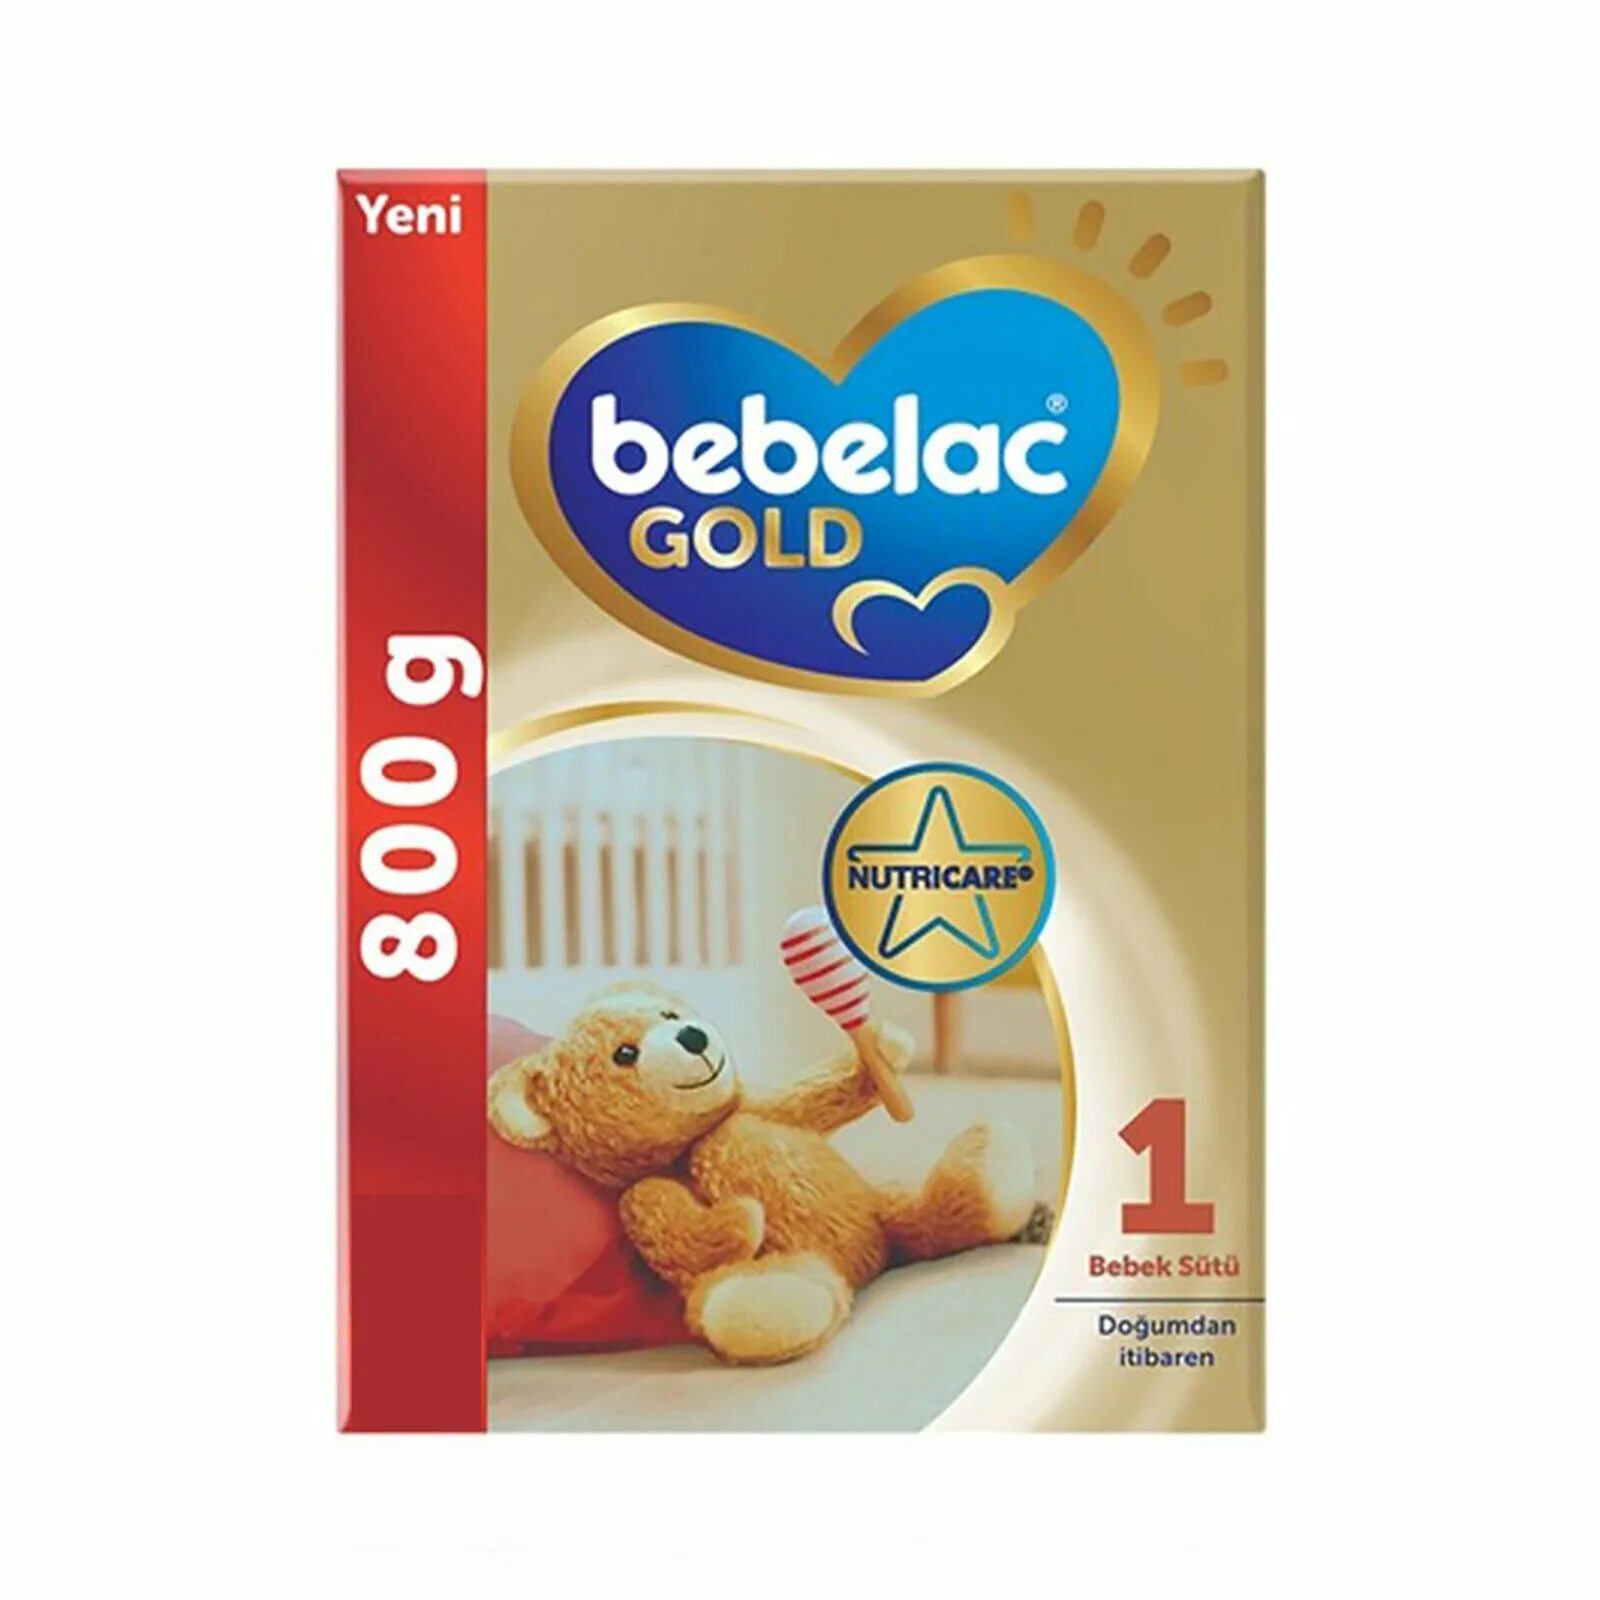 Bebelac Gold 1 / Бебелак Голд 1. Bebelac Gold отзывы. Бебелак Голд 1 смесь молочная сухая козье молоко 0+ мес. Кор.. Bebelac Cold отзывы.